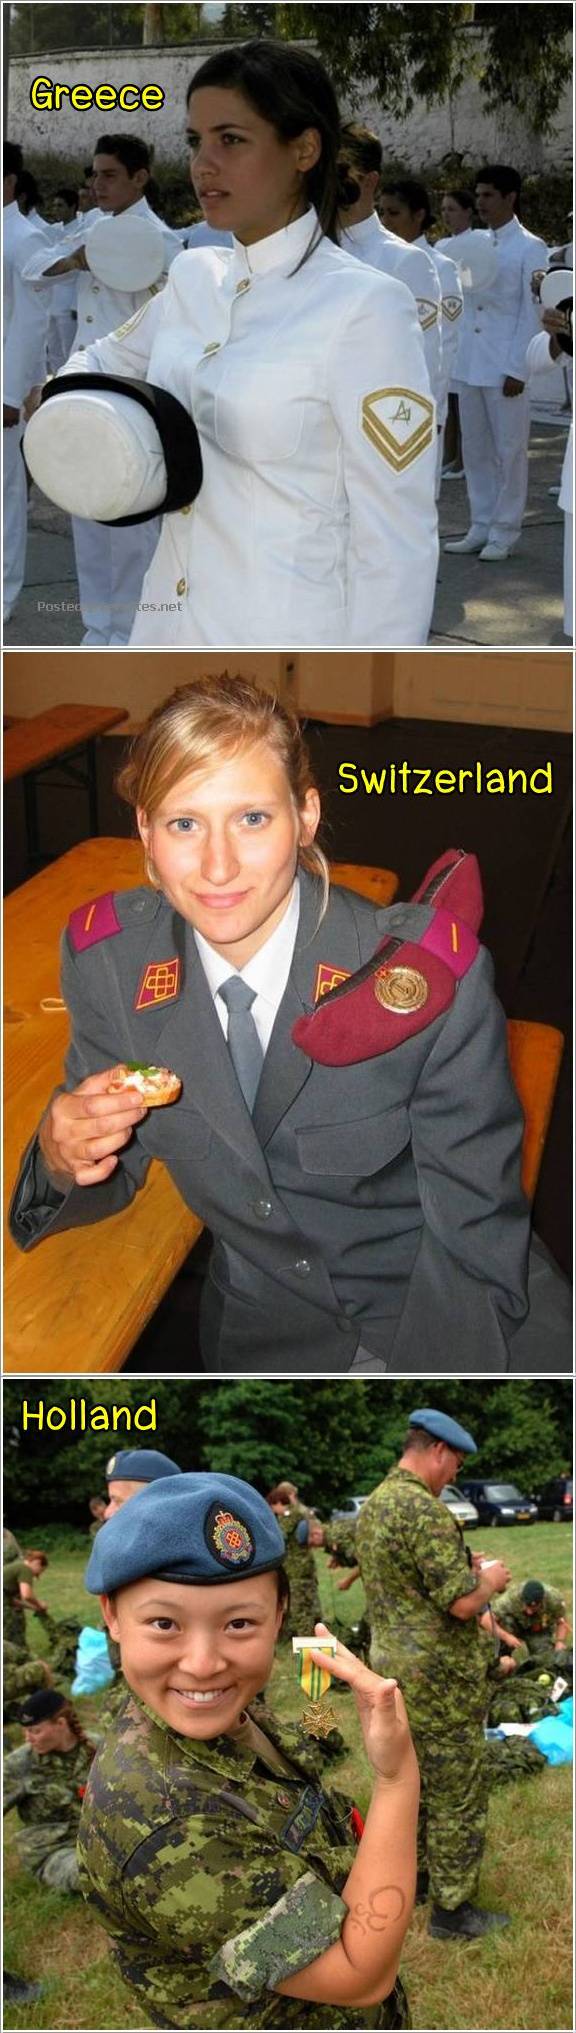 ทหารหญิงของแต่ละประเทศ